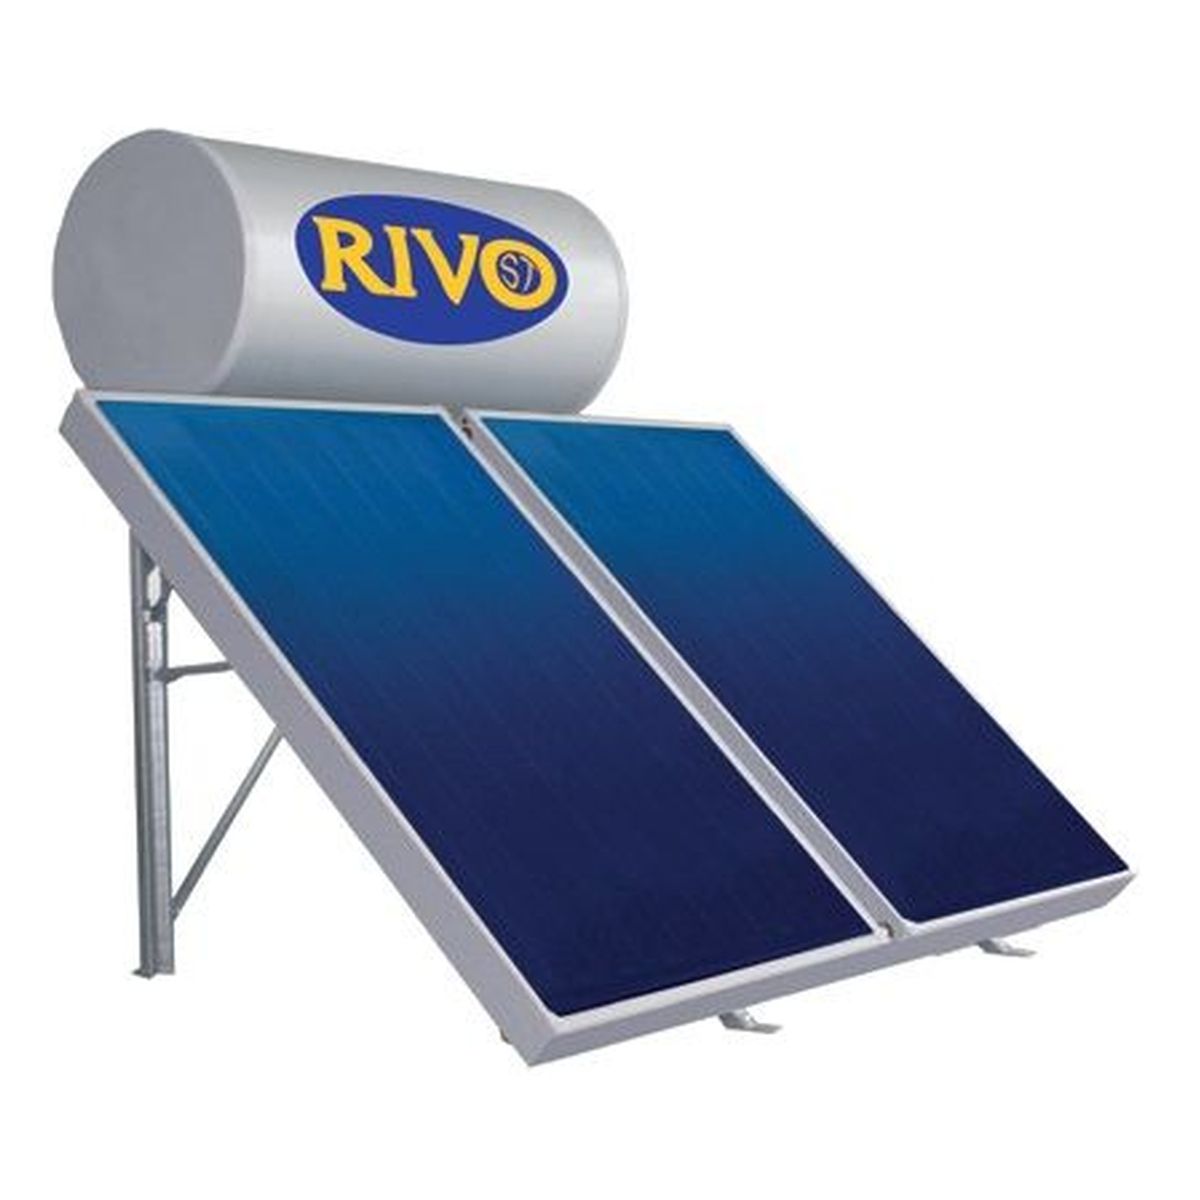 Ηλιακός Glass ΙΙΙ STK200TP 2x2m2 Κεραμοσκεπή 44.1.320040Κ RIVO ST